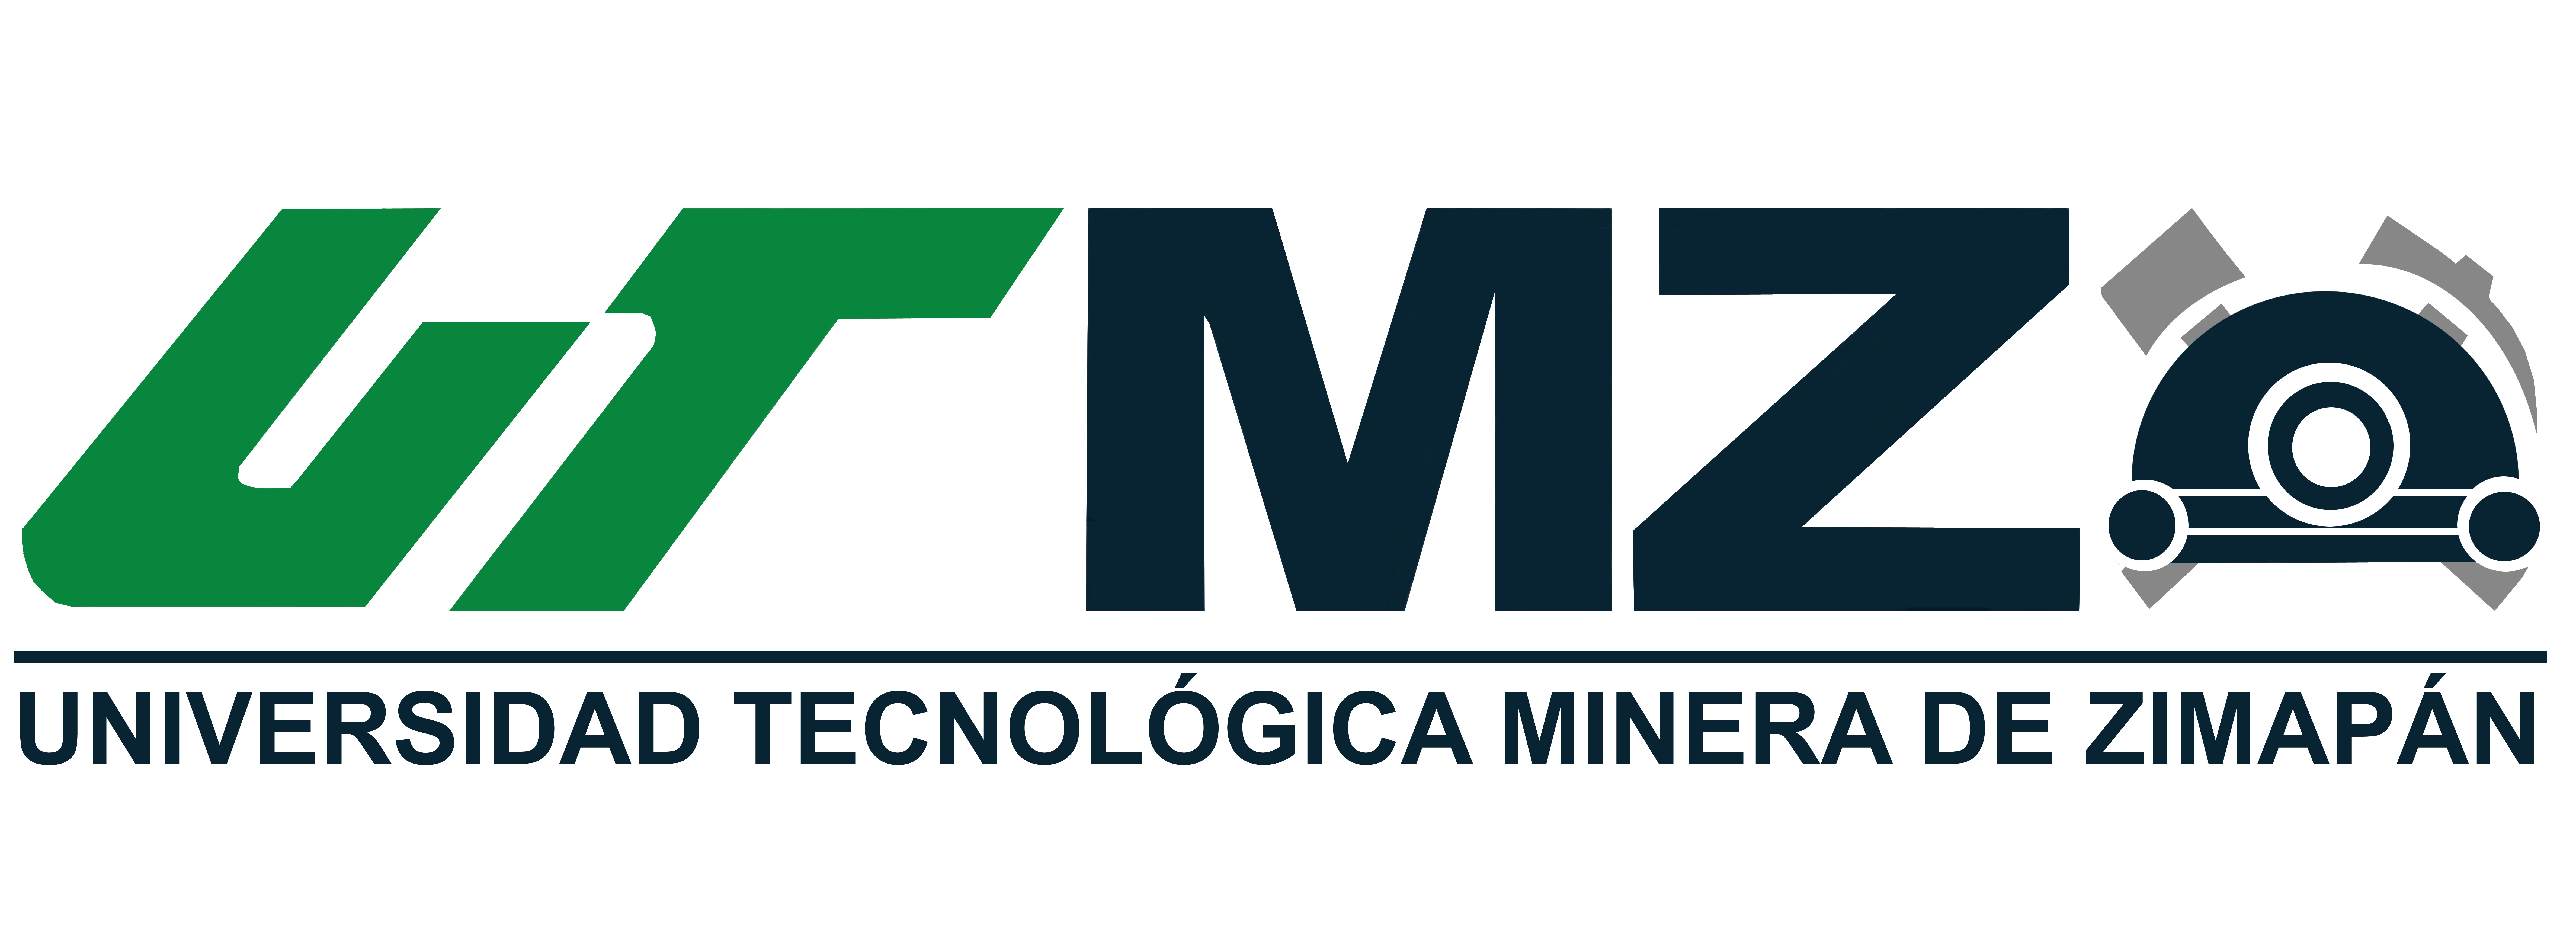 Universidad Tecnológica Minera de Zimapán